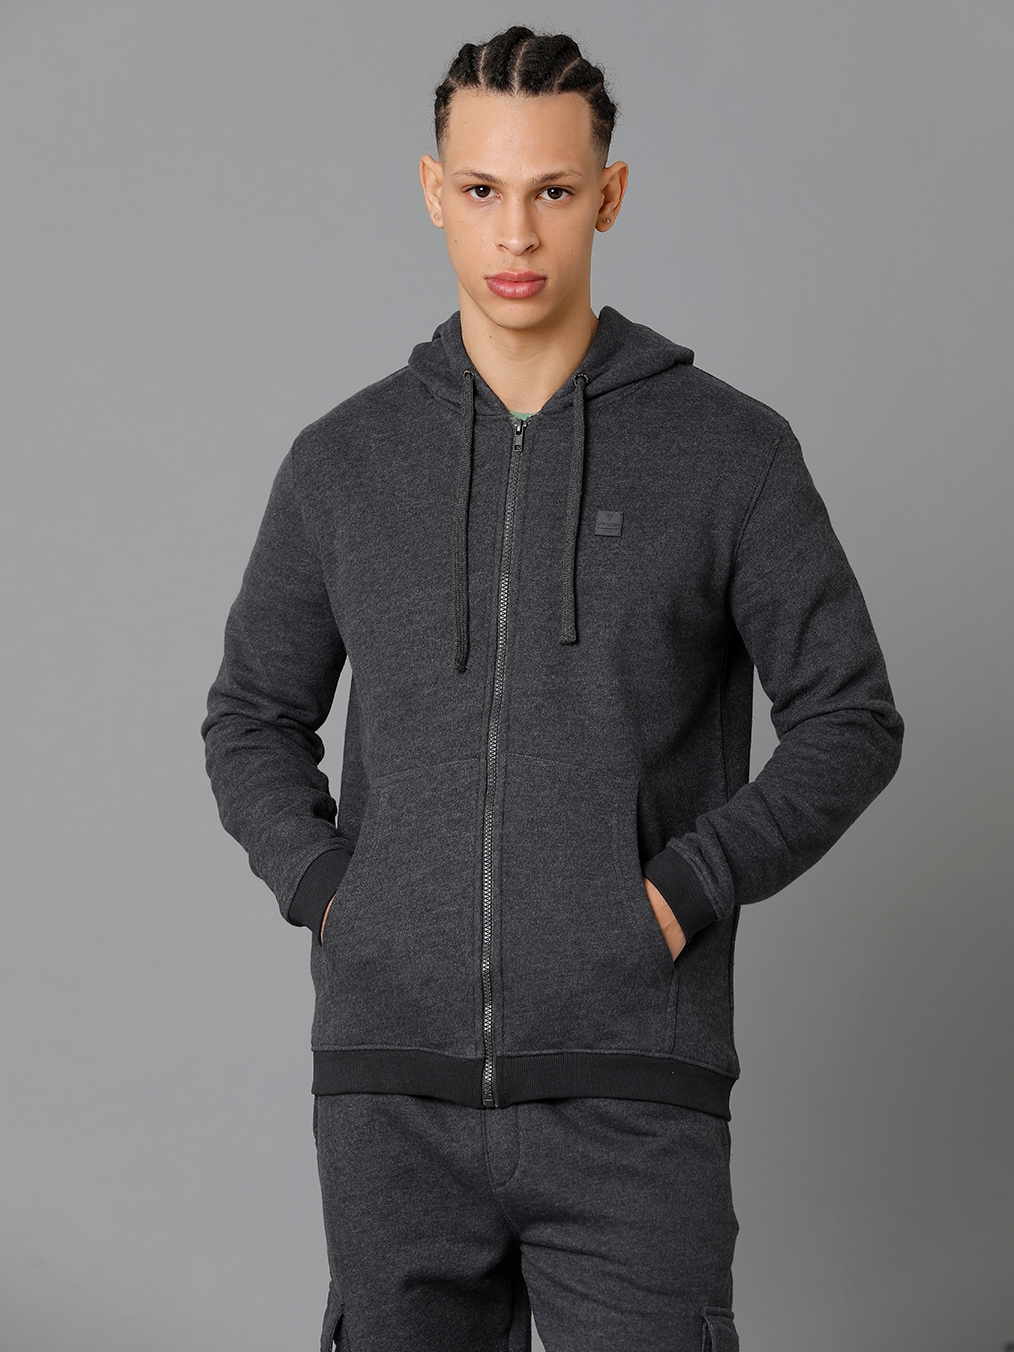 Men's Dark Grey Fleece Solid hoodie